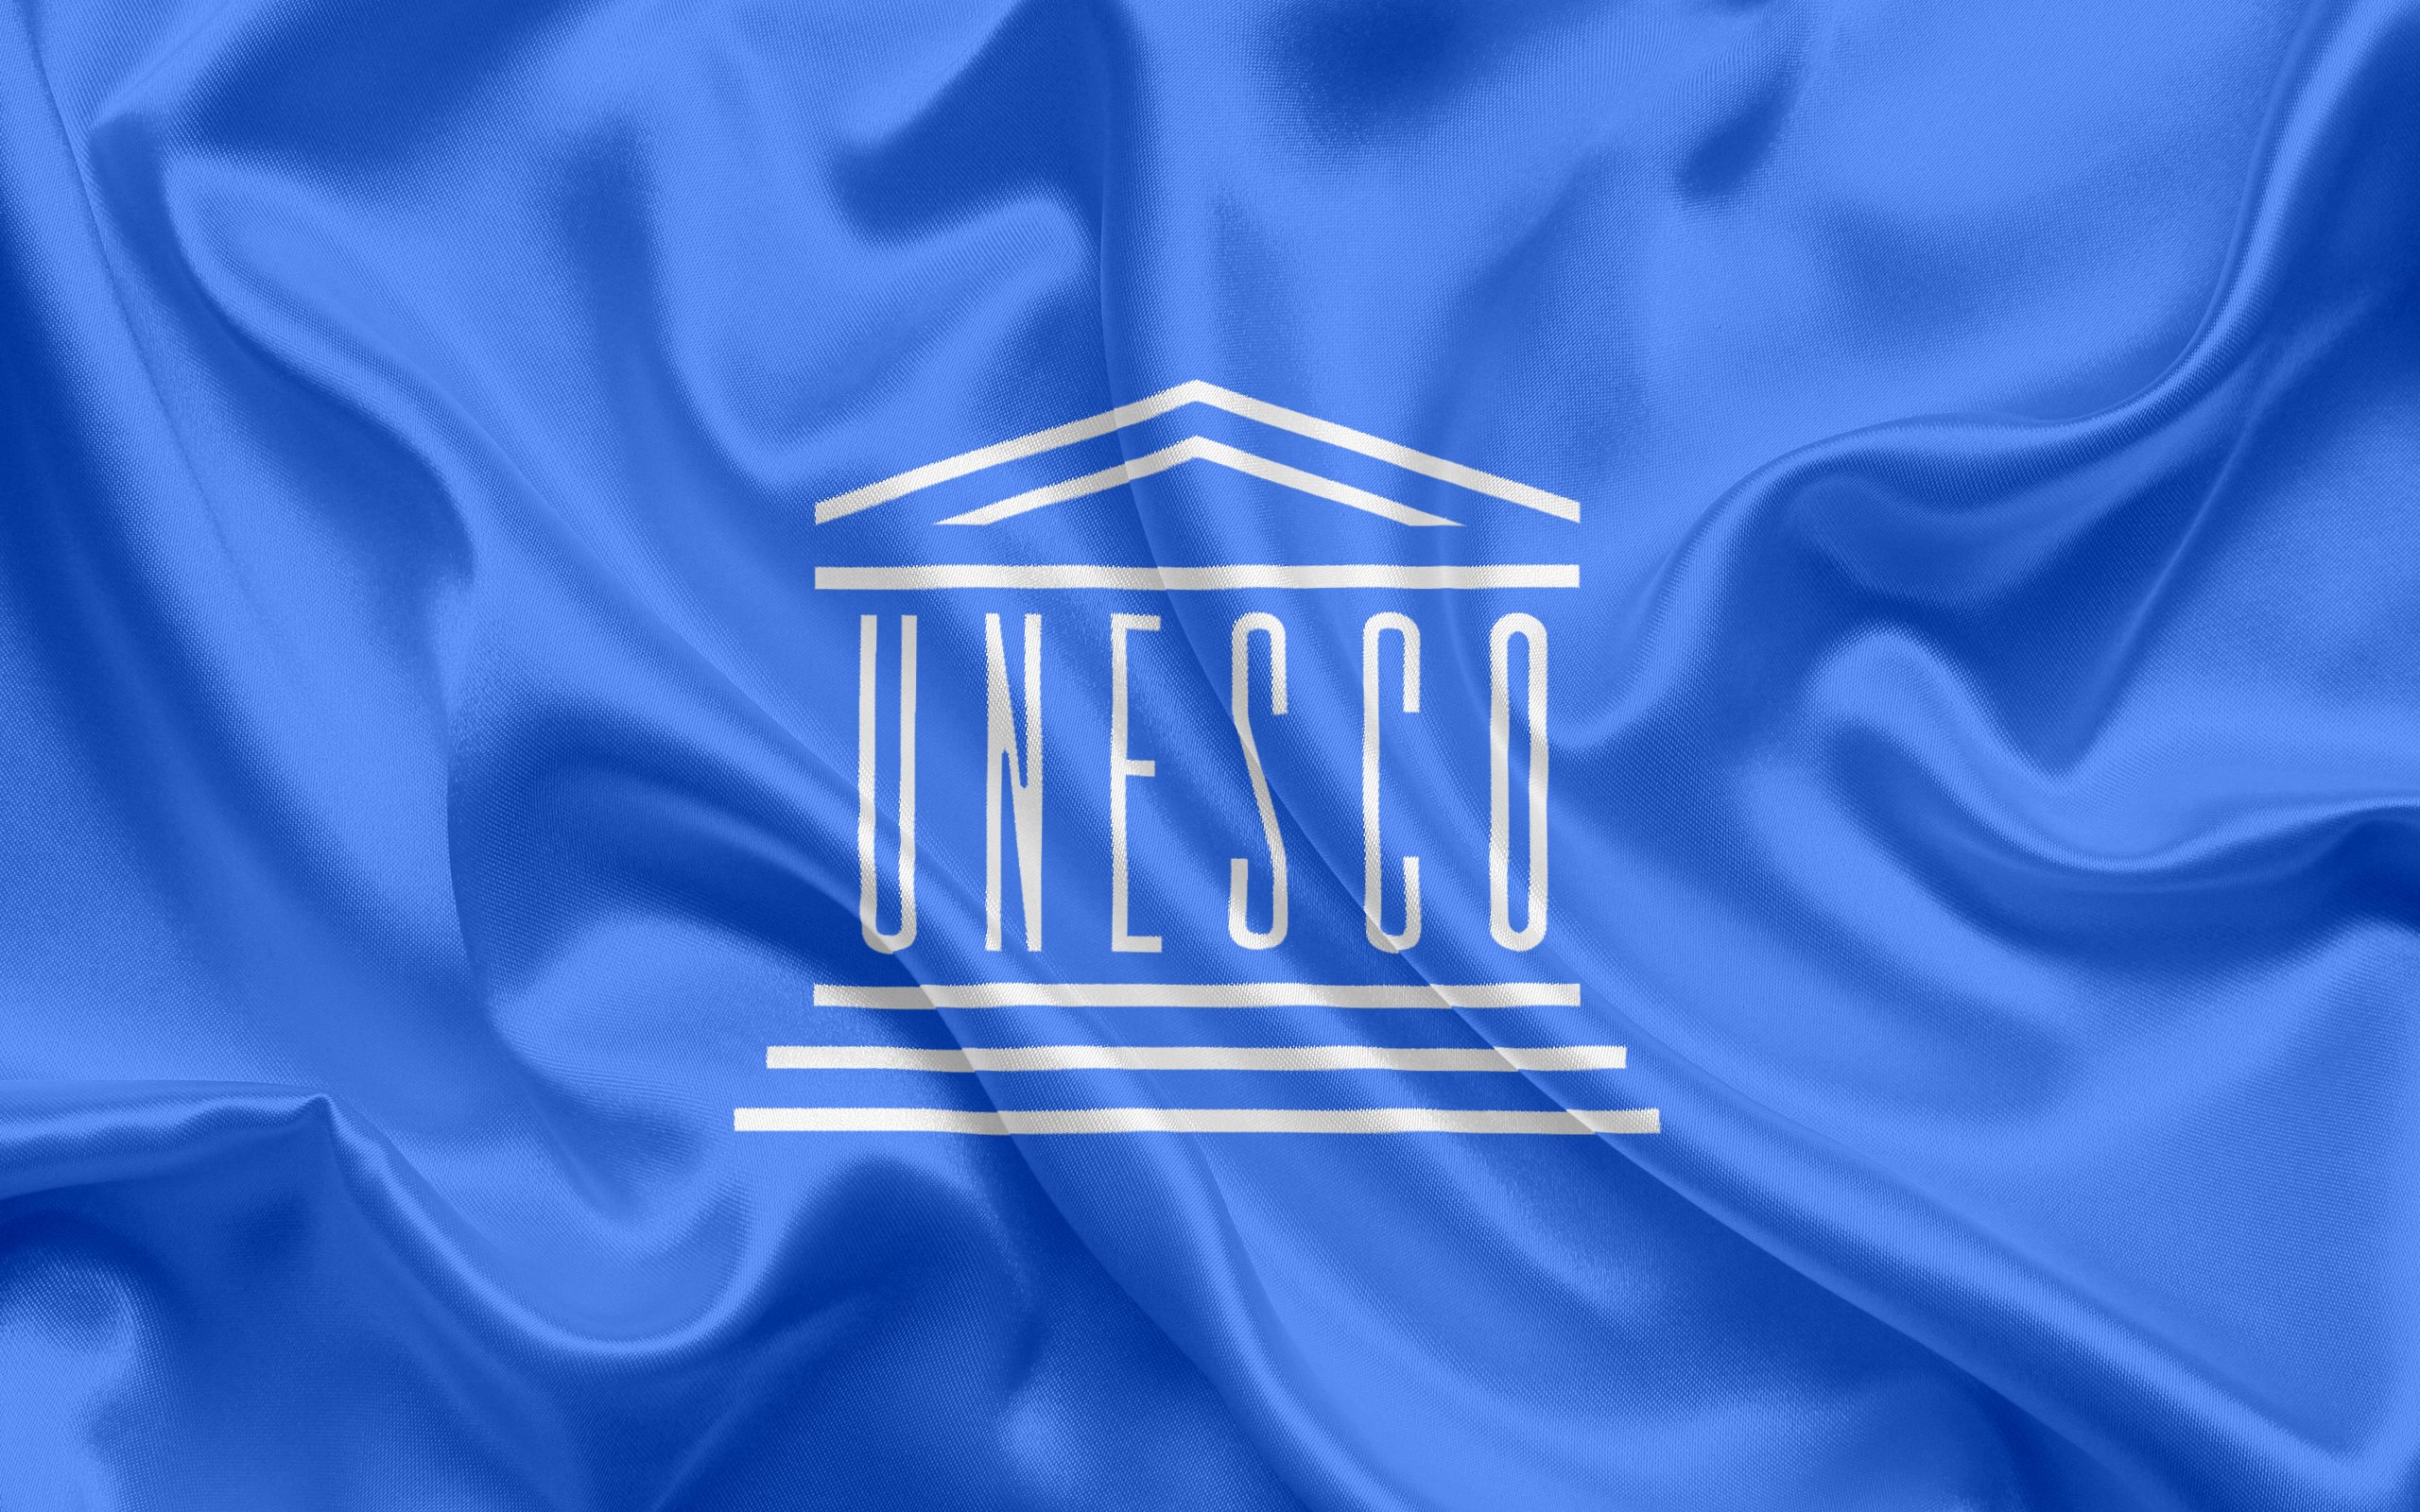 Unesco org. ЮНЕСКО Международная организация. ООН по вопросам образования науки и культуры ЮНЕСКО. ЮНЕСКО эмблема. Флаг ЮНЕСКО.